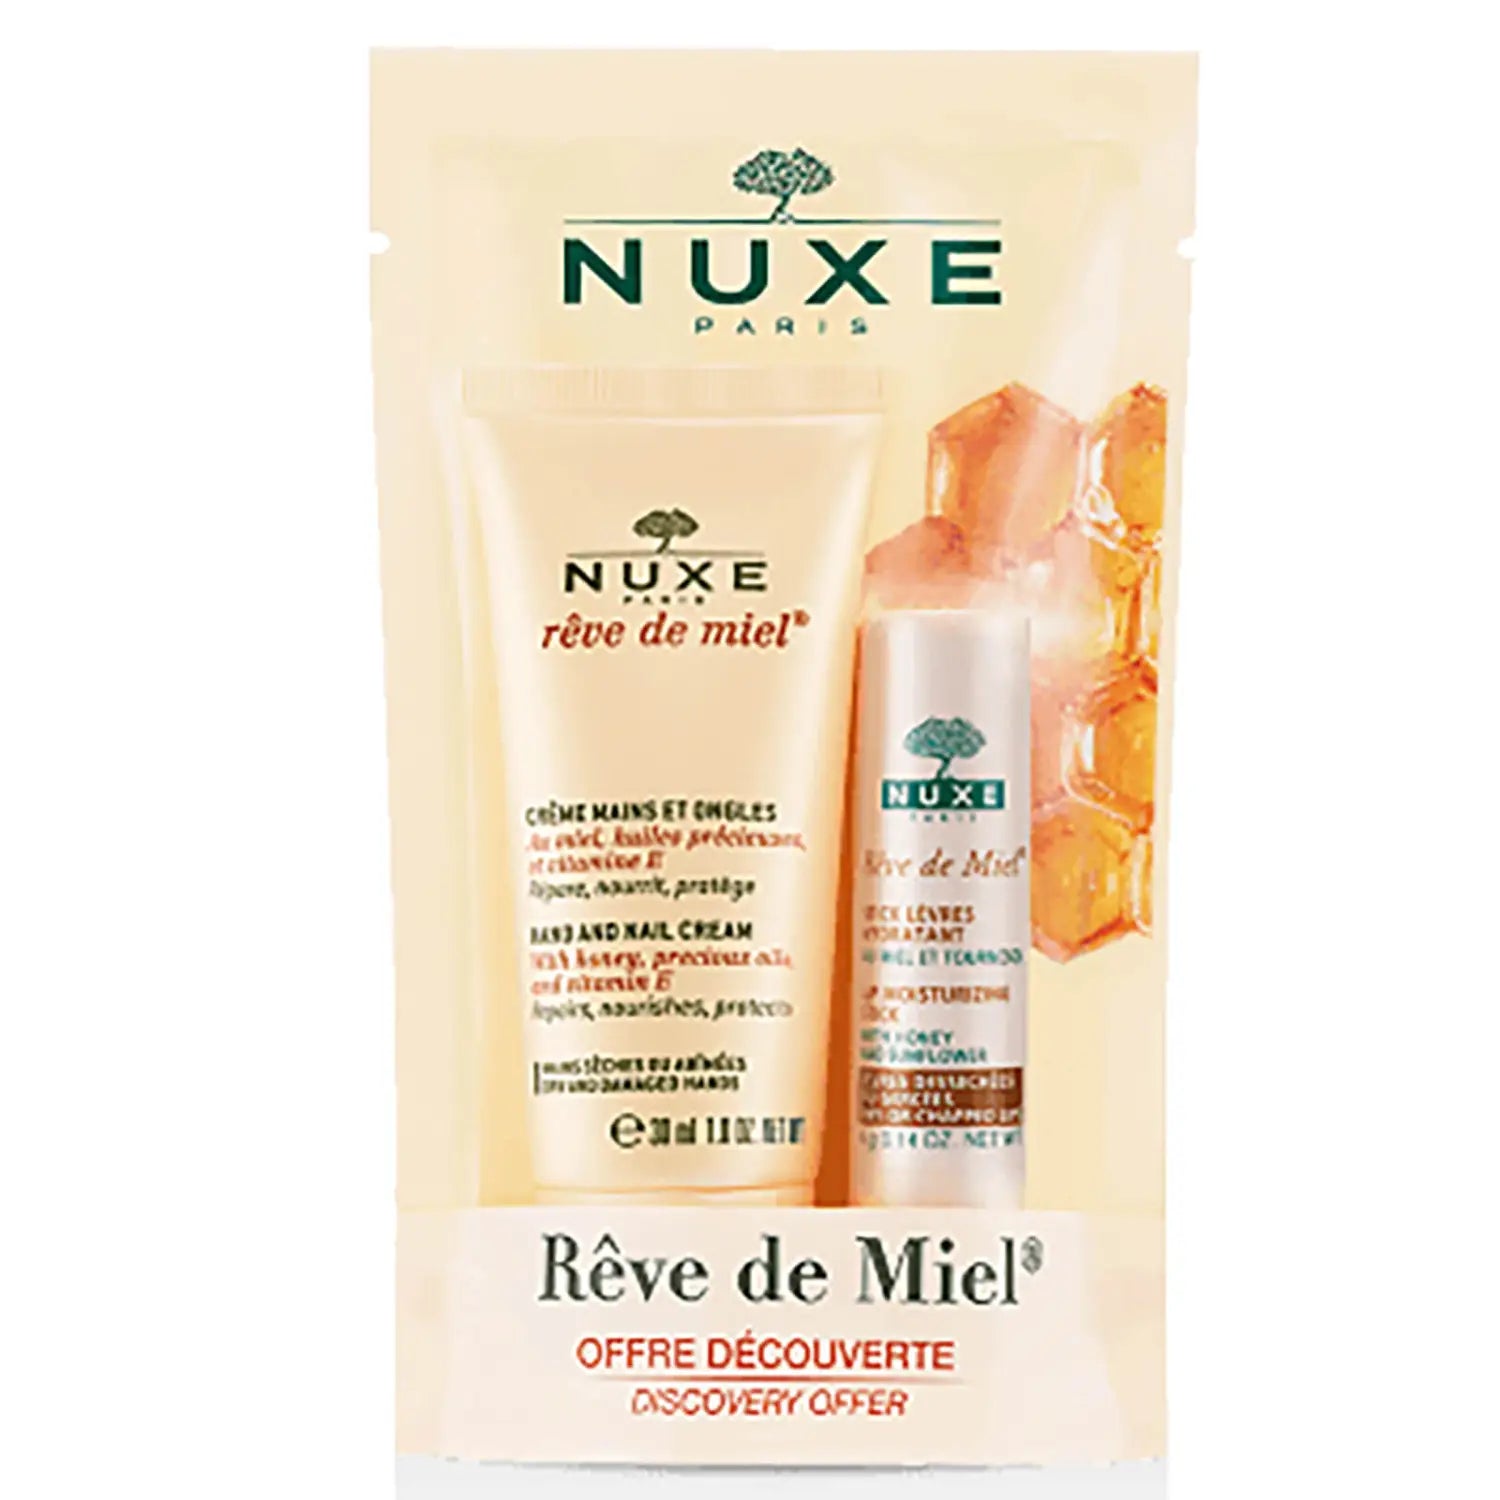 Nuxe Rêve de Miel Hand Cream 30ml with Rêve de Miel Lip Stick 4g Bundle